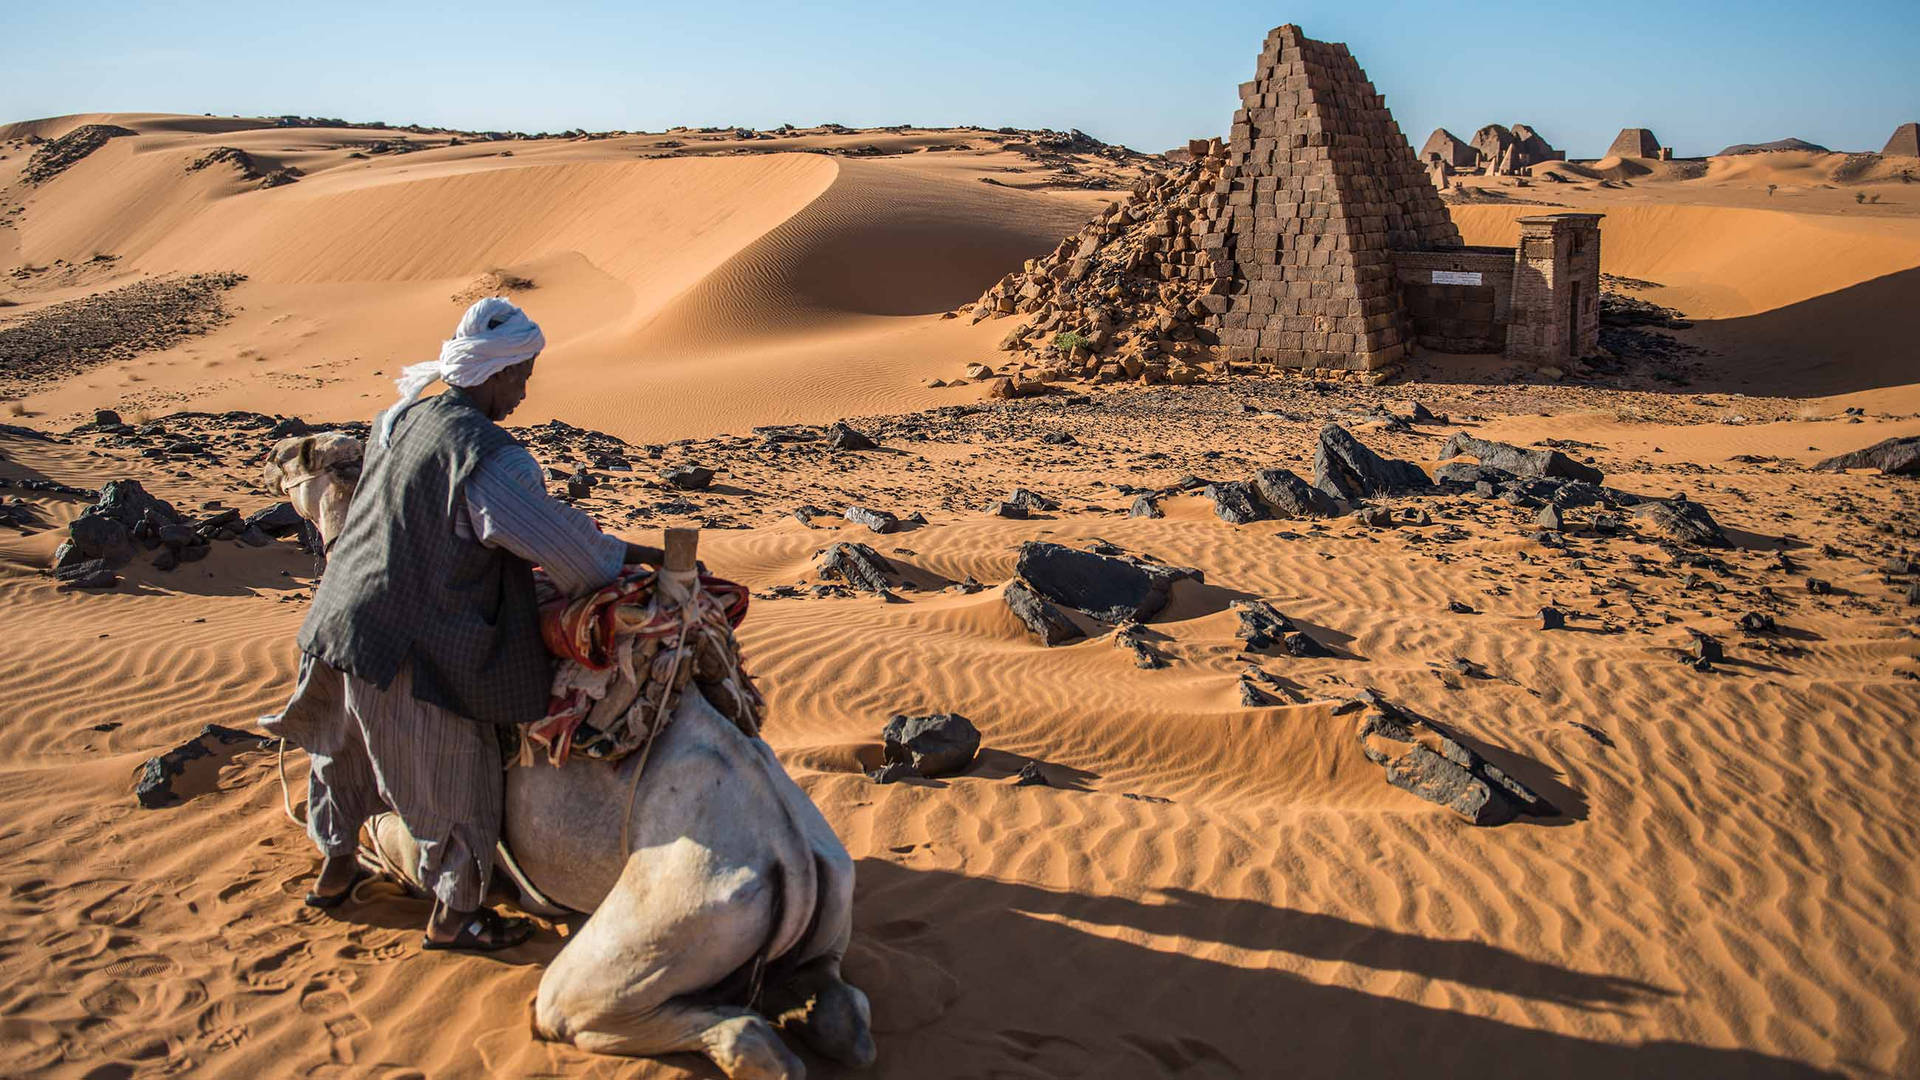 Camel In Sudan Desert Background